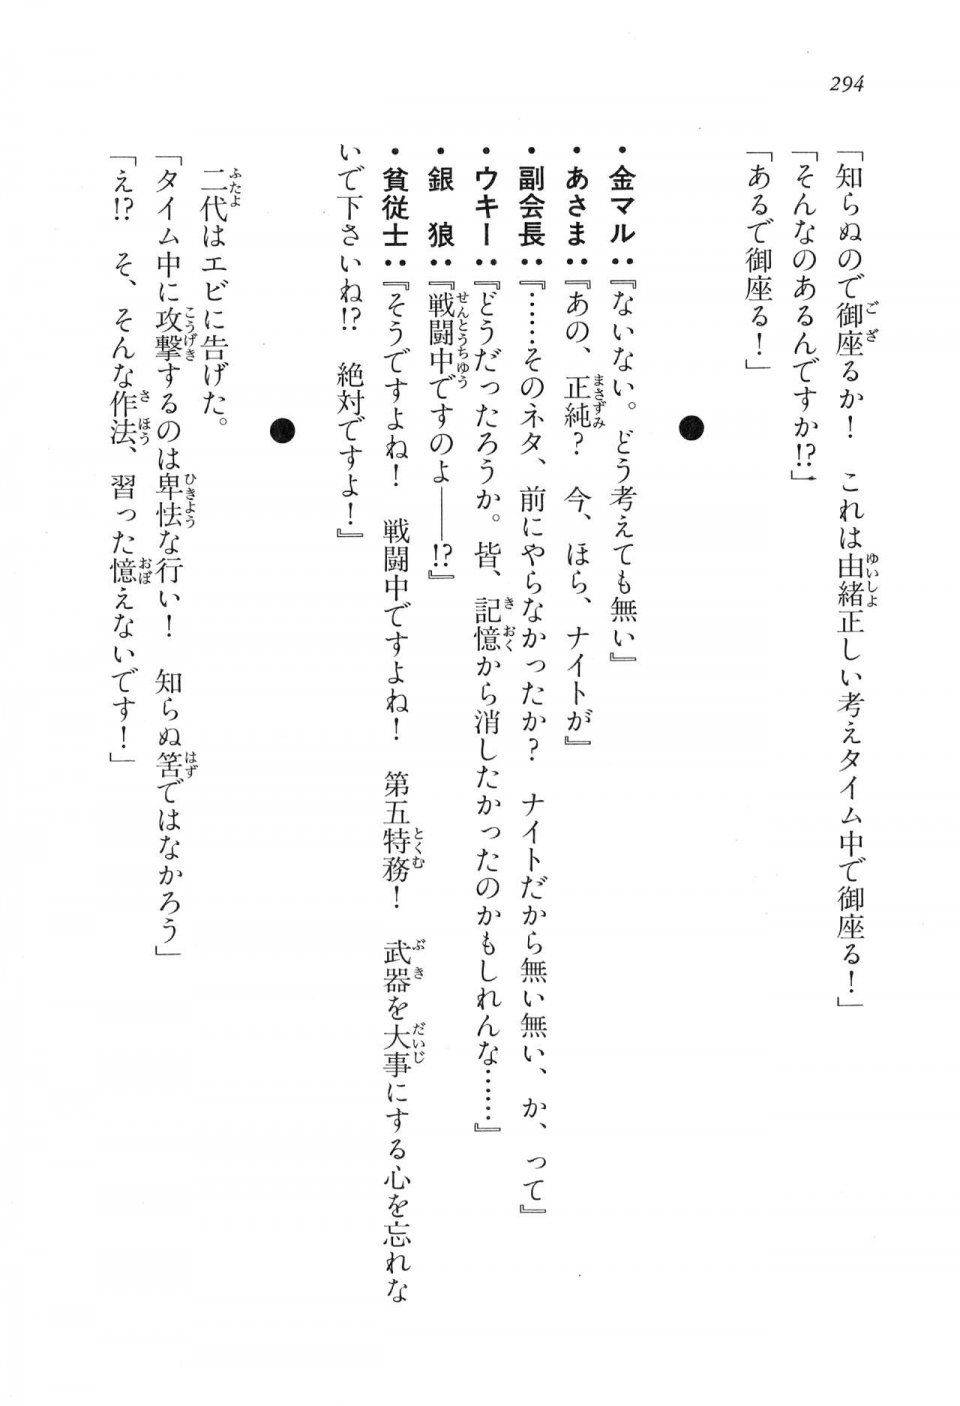 Kyoukai Senjou no Horizon LN Vol 17(7B) - Photo #294